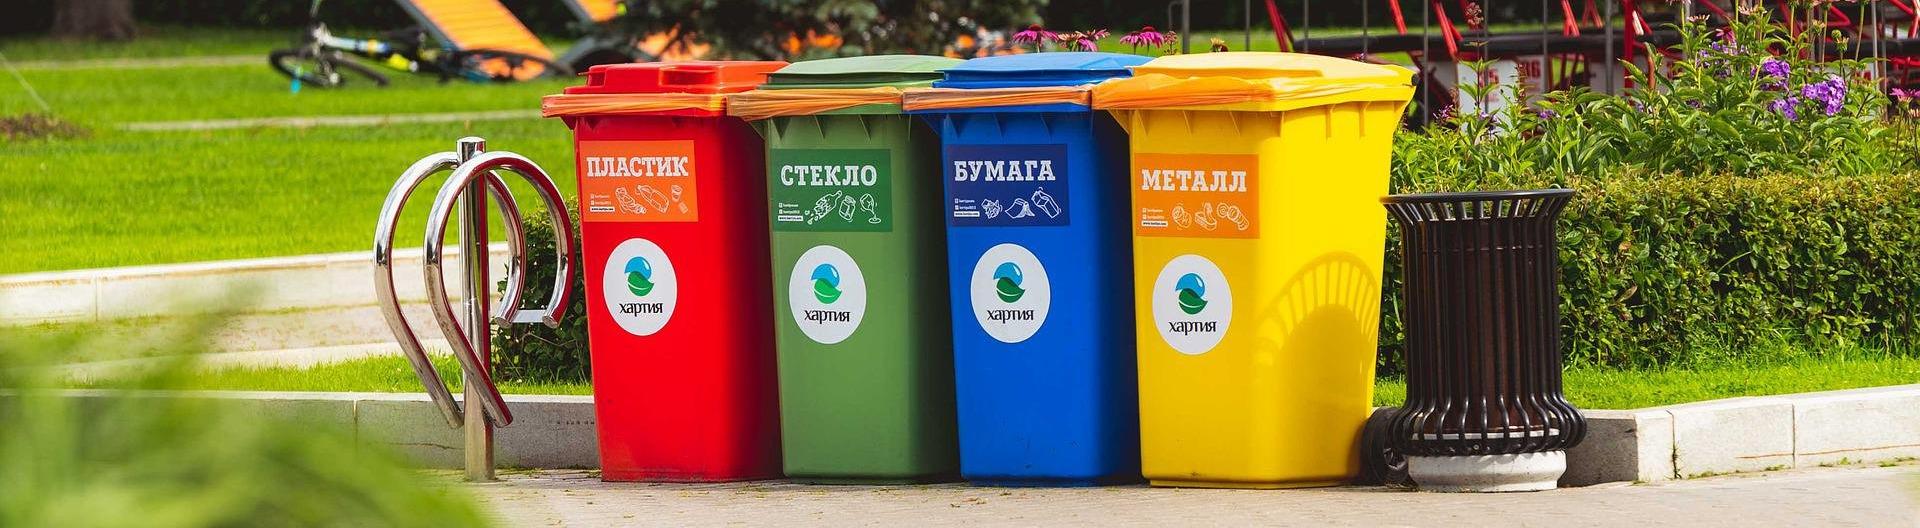 Иркутский школьник знает, как спасти планету от мусора его сортировкой